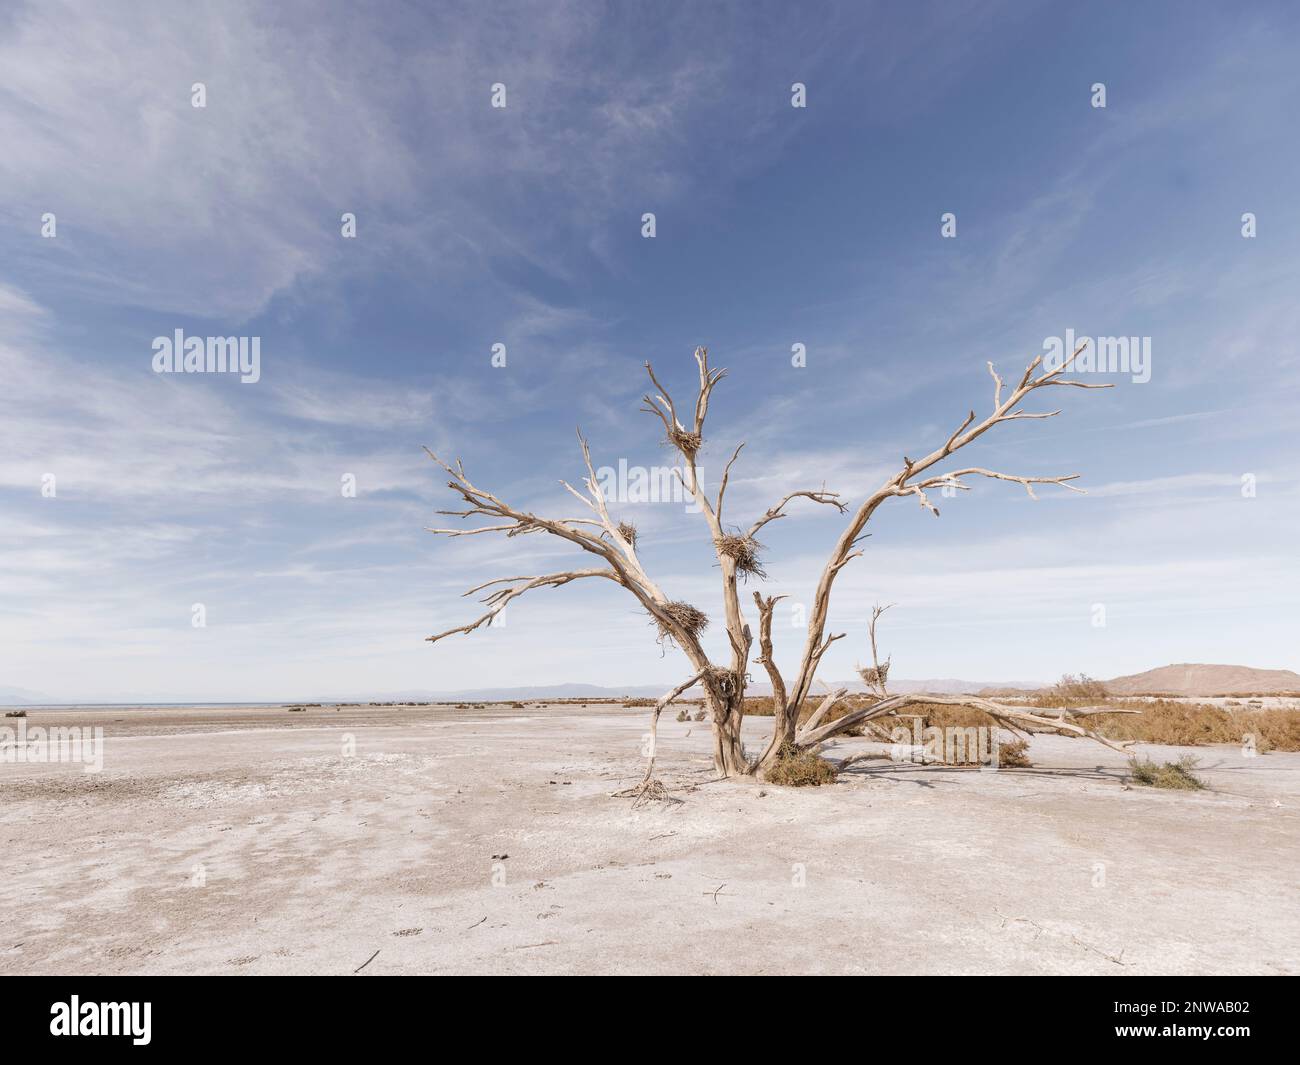 Un arbre de coton mort avec des nids de hérons abandonnés depuis longtemps se dresse le long de la rive sud de la mer de Salton, en Californie, dévastée par la sécheresse. Banque D'Images